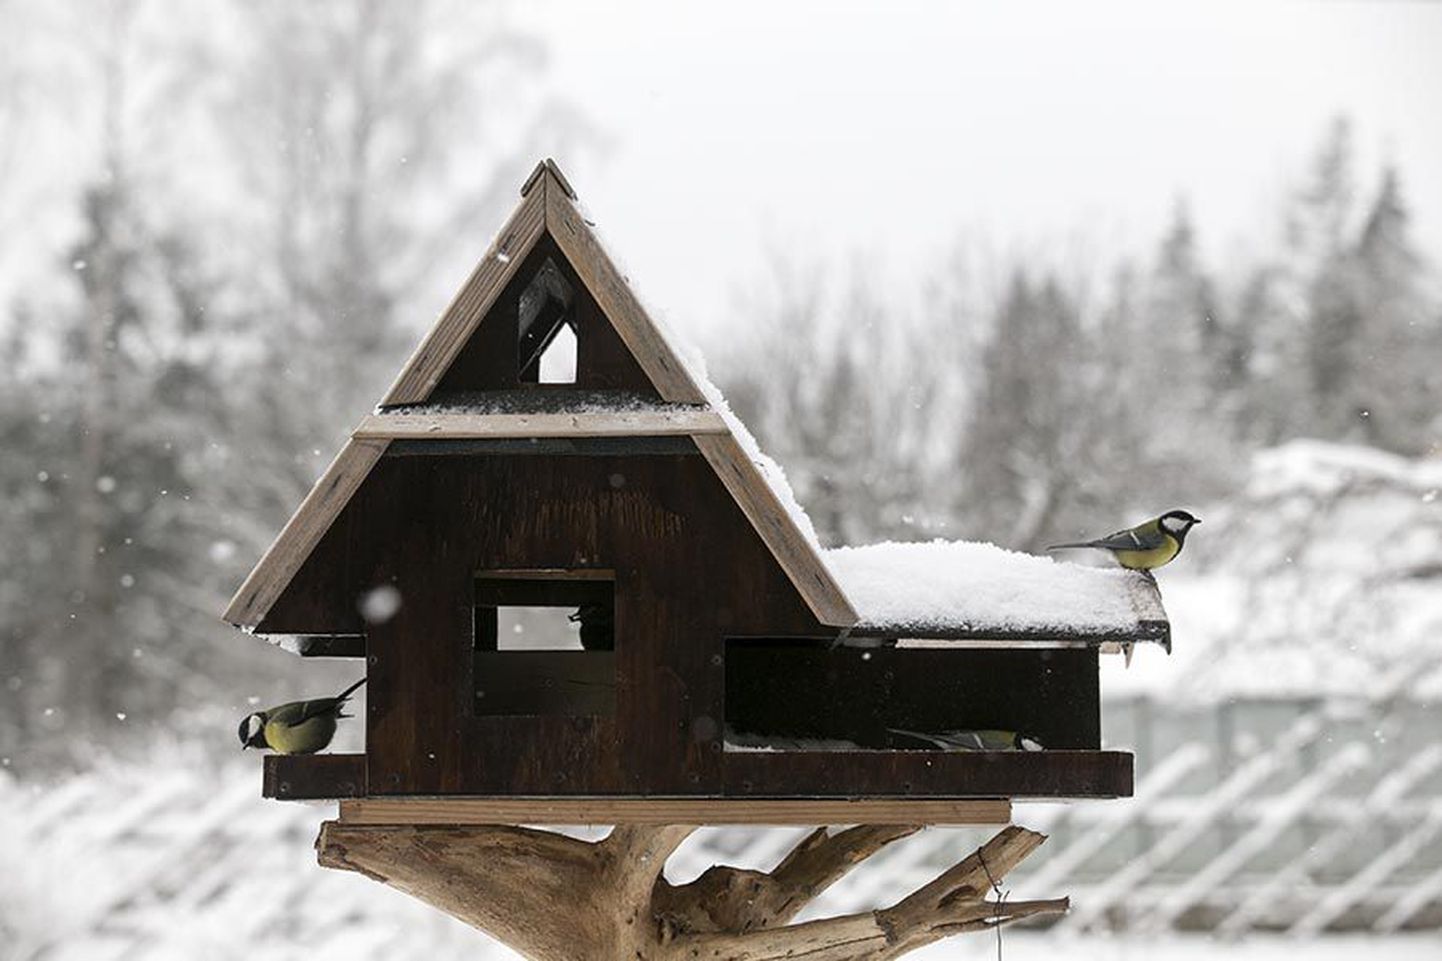 Kui lumi peidab maad, saabub lindudele toidu otsimises raske aeg.